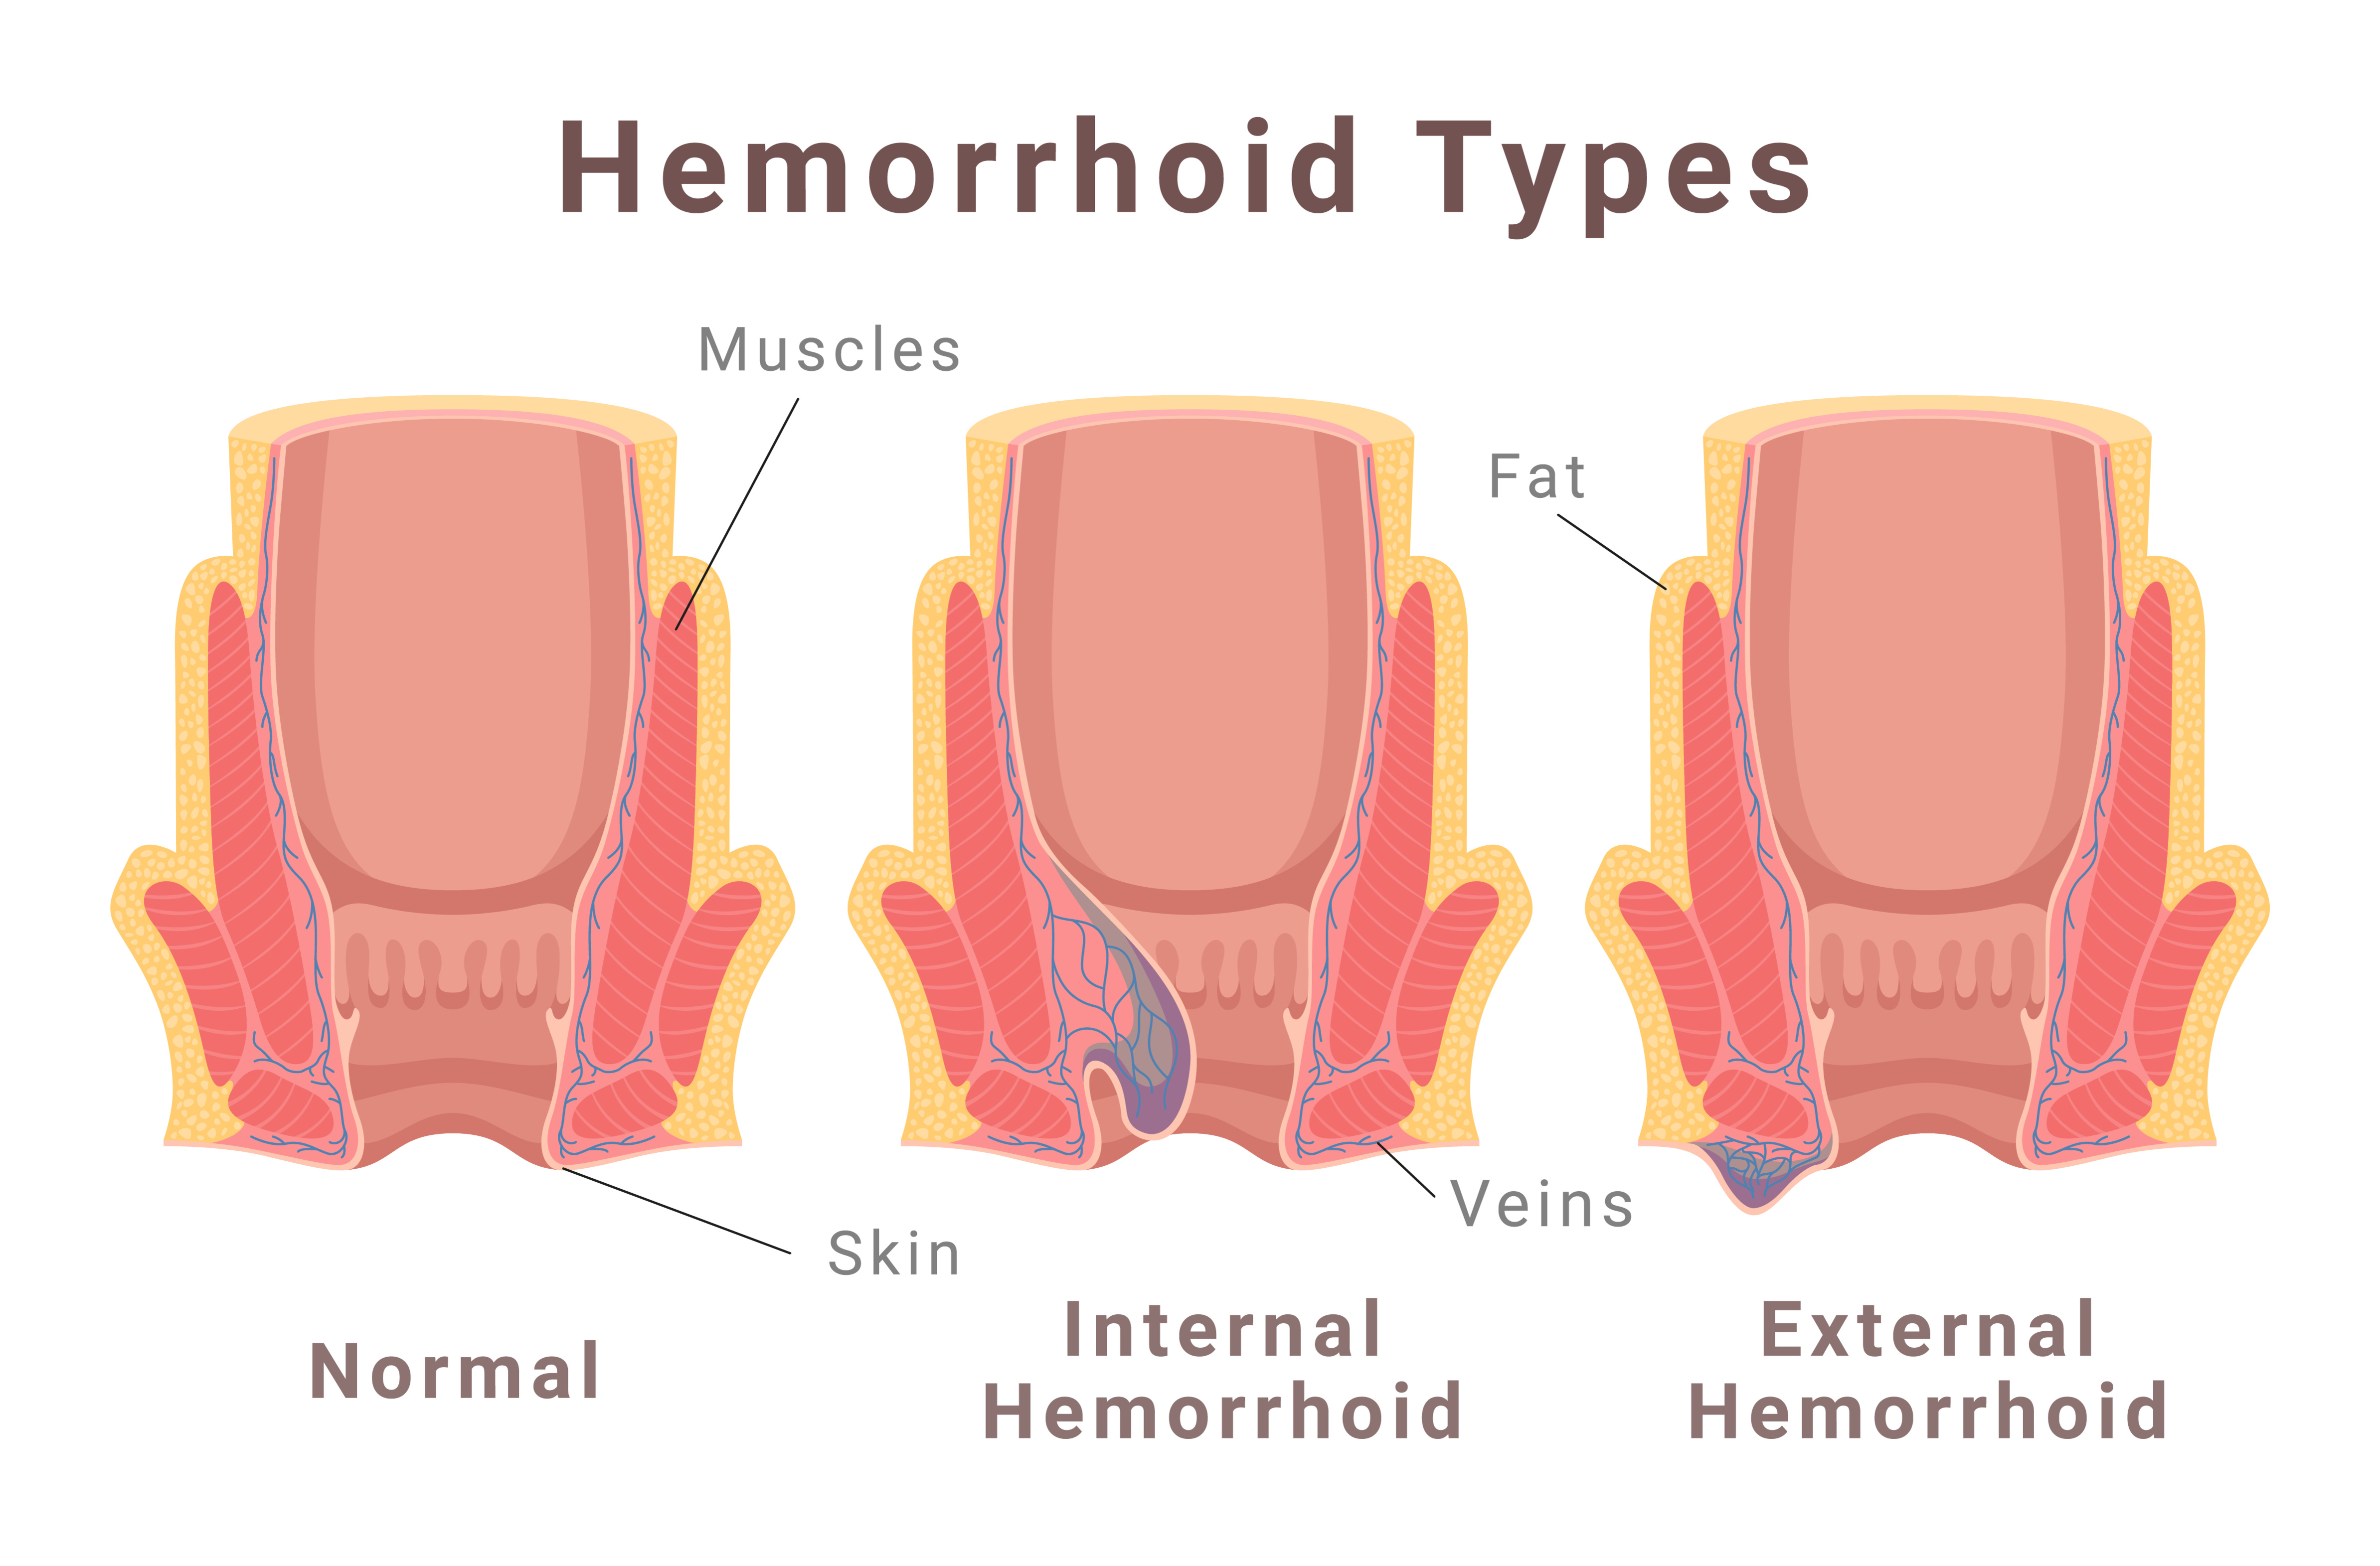 internal vs external hemorrhoids